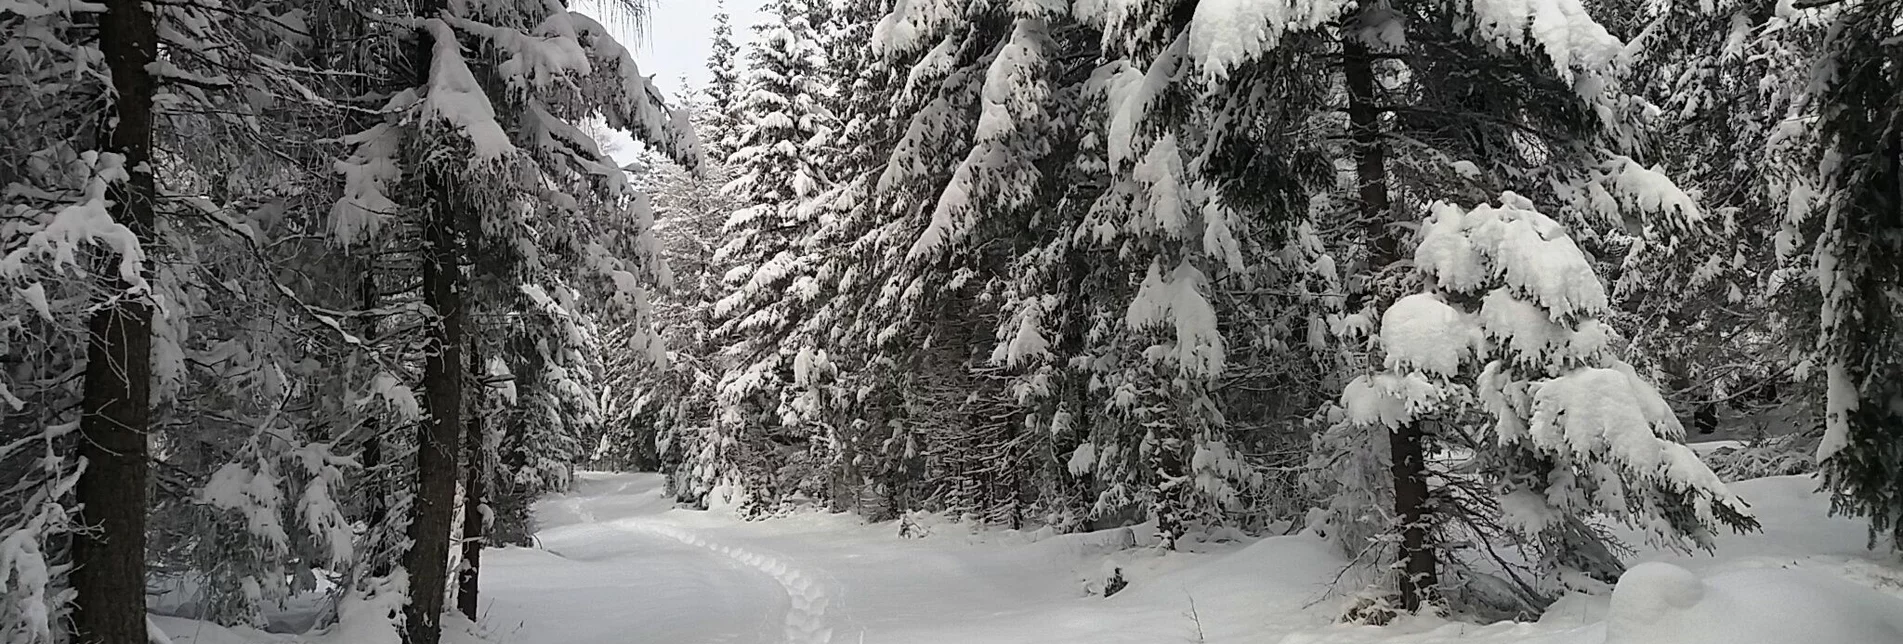 Snowshoe walking Im Schnee auf die Packeralpe - Touren-Impression #1 | © Region Graz